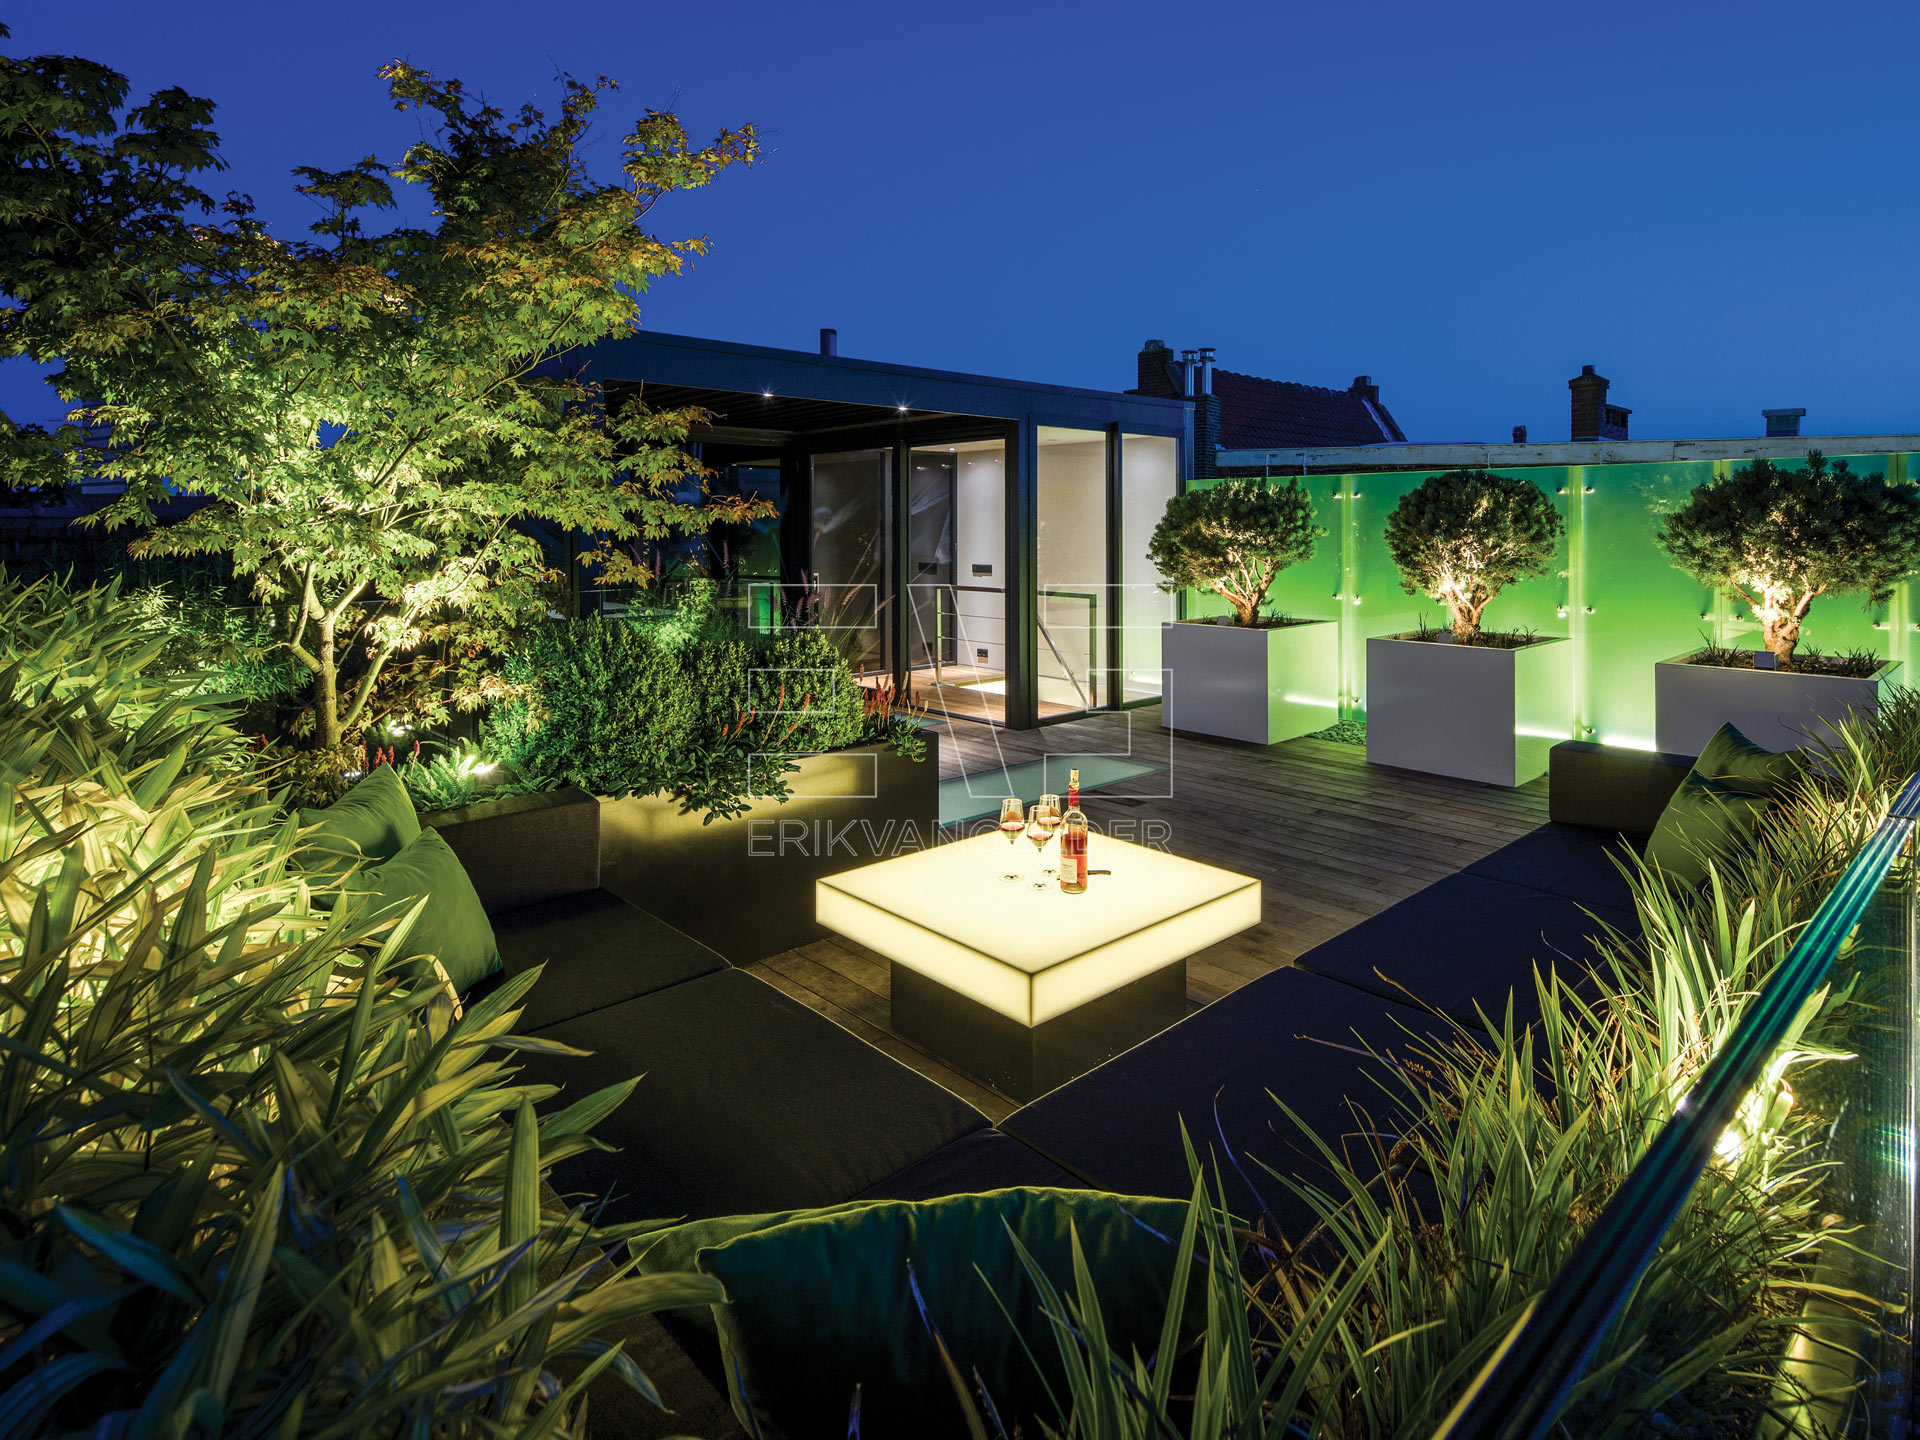 datterras ontwerp met lichtgevende tafel  Exclusive garden design roof garden daktuin moderne luxe elementen overkapping lounge erikvangelder tuindesign tuinarchitect sfeer